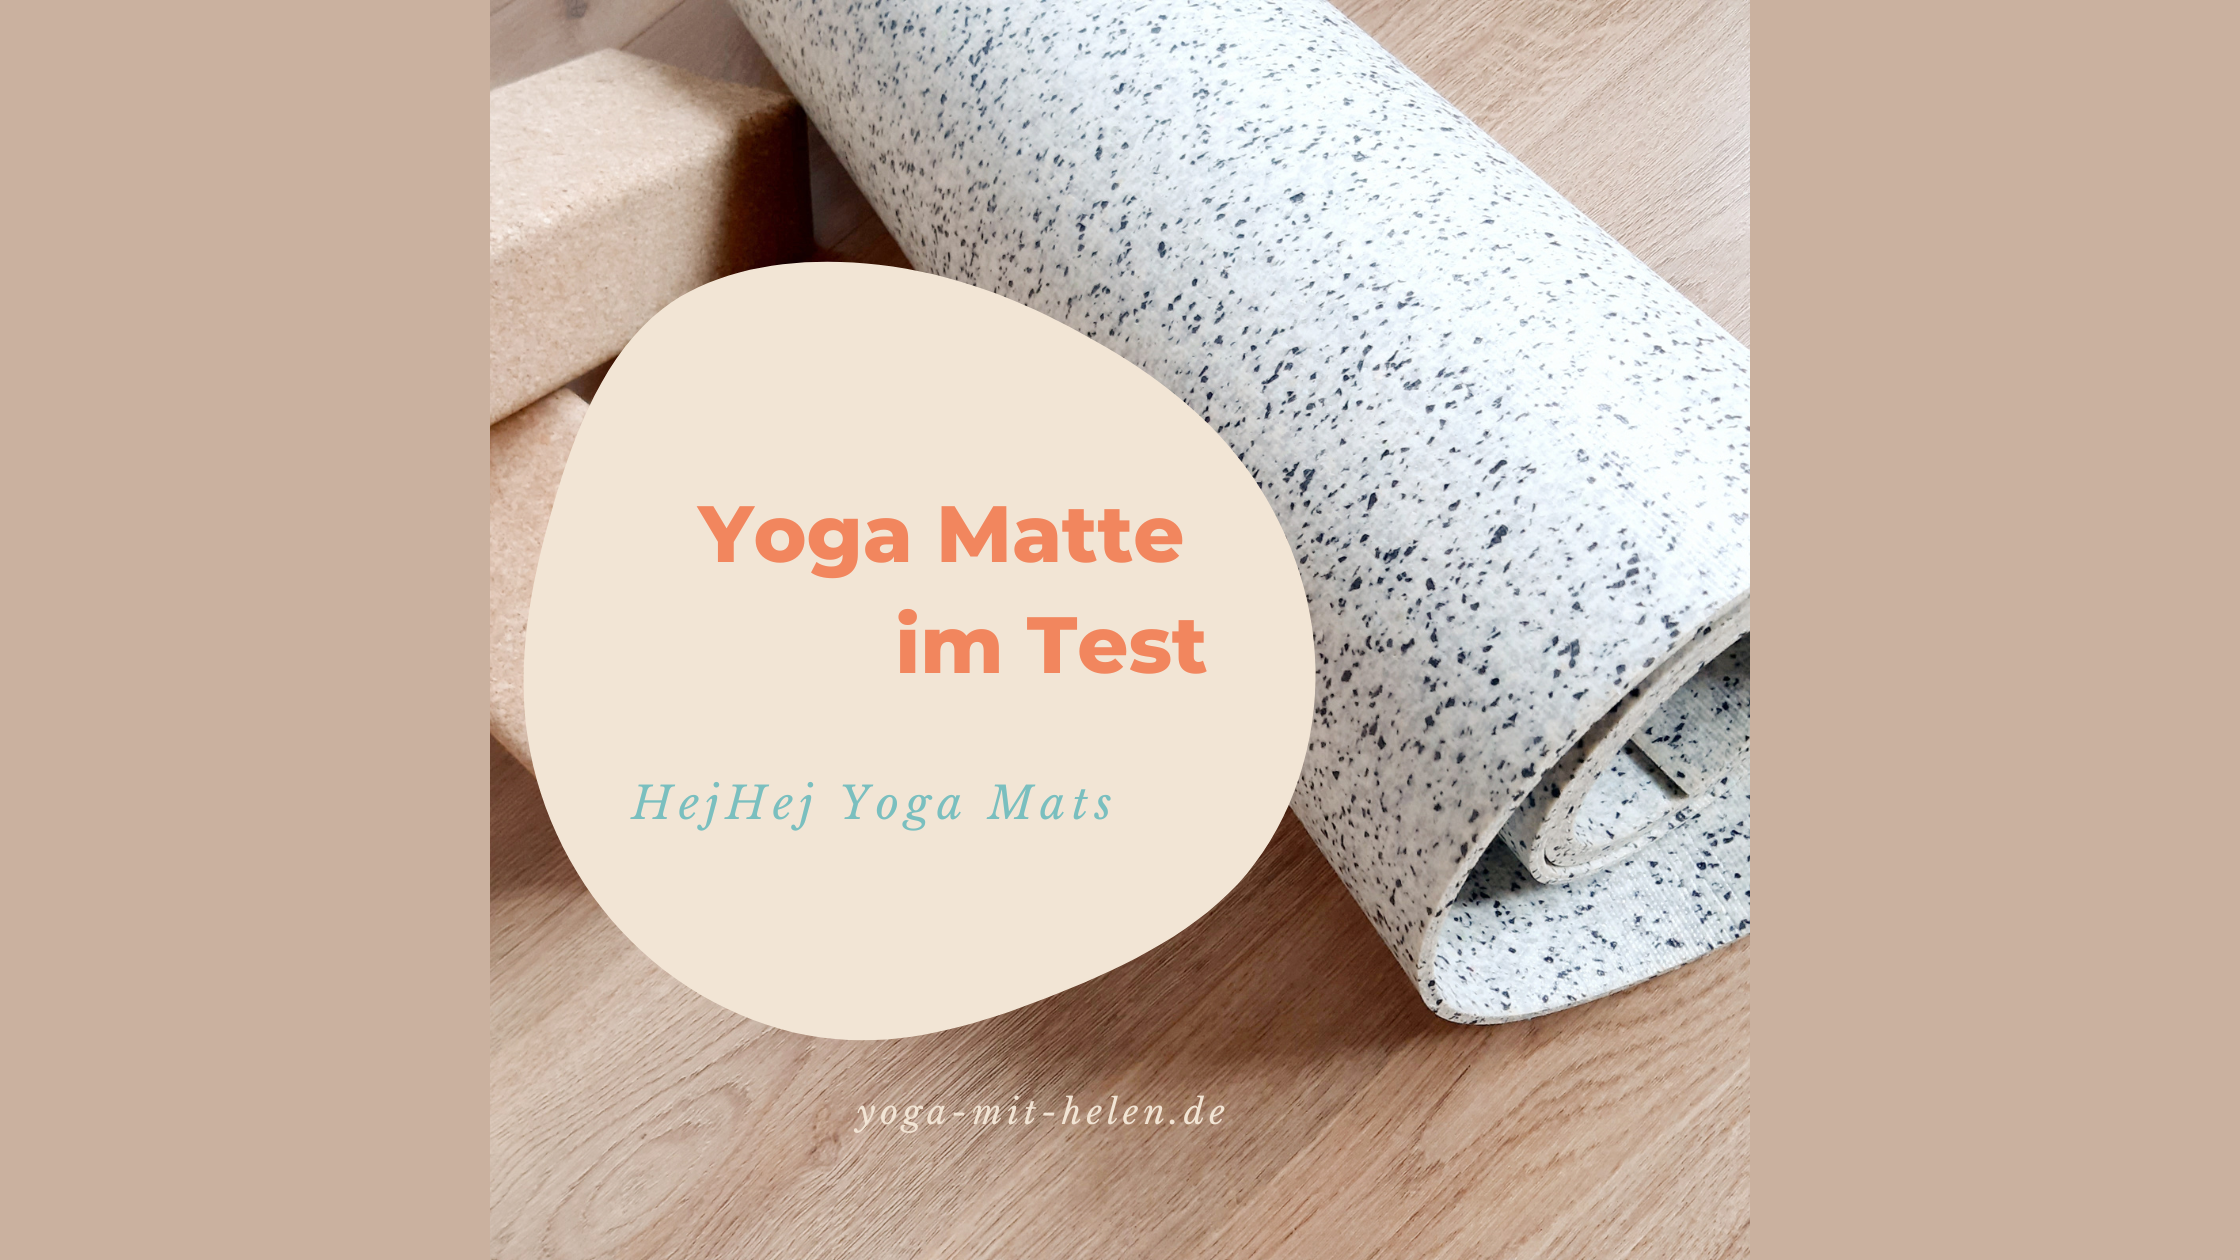 yoga-matte-im-test-hejhejmats